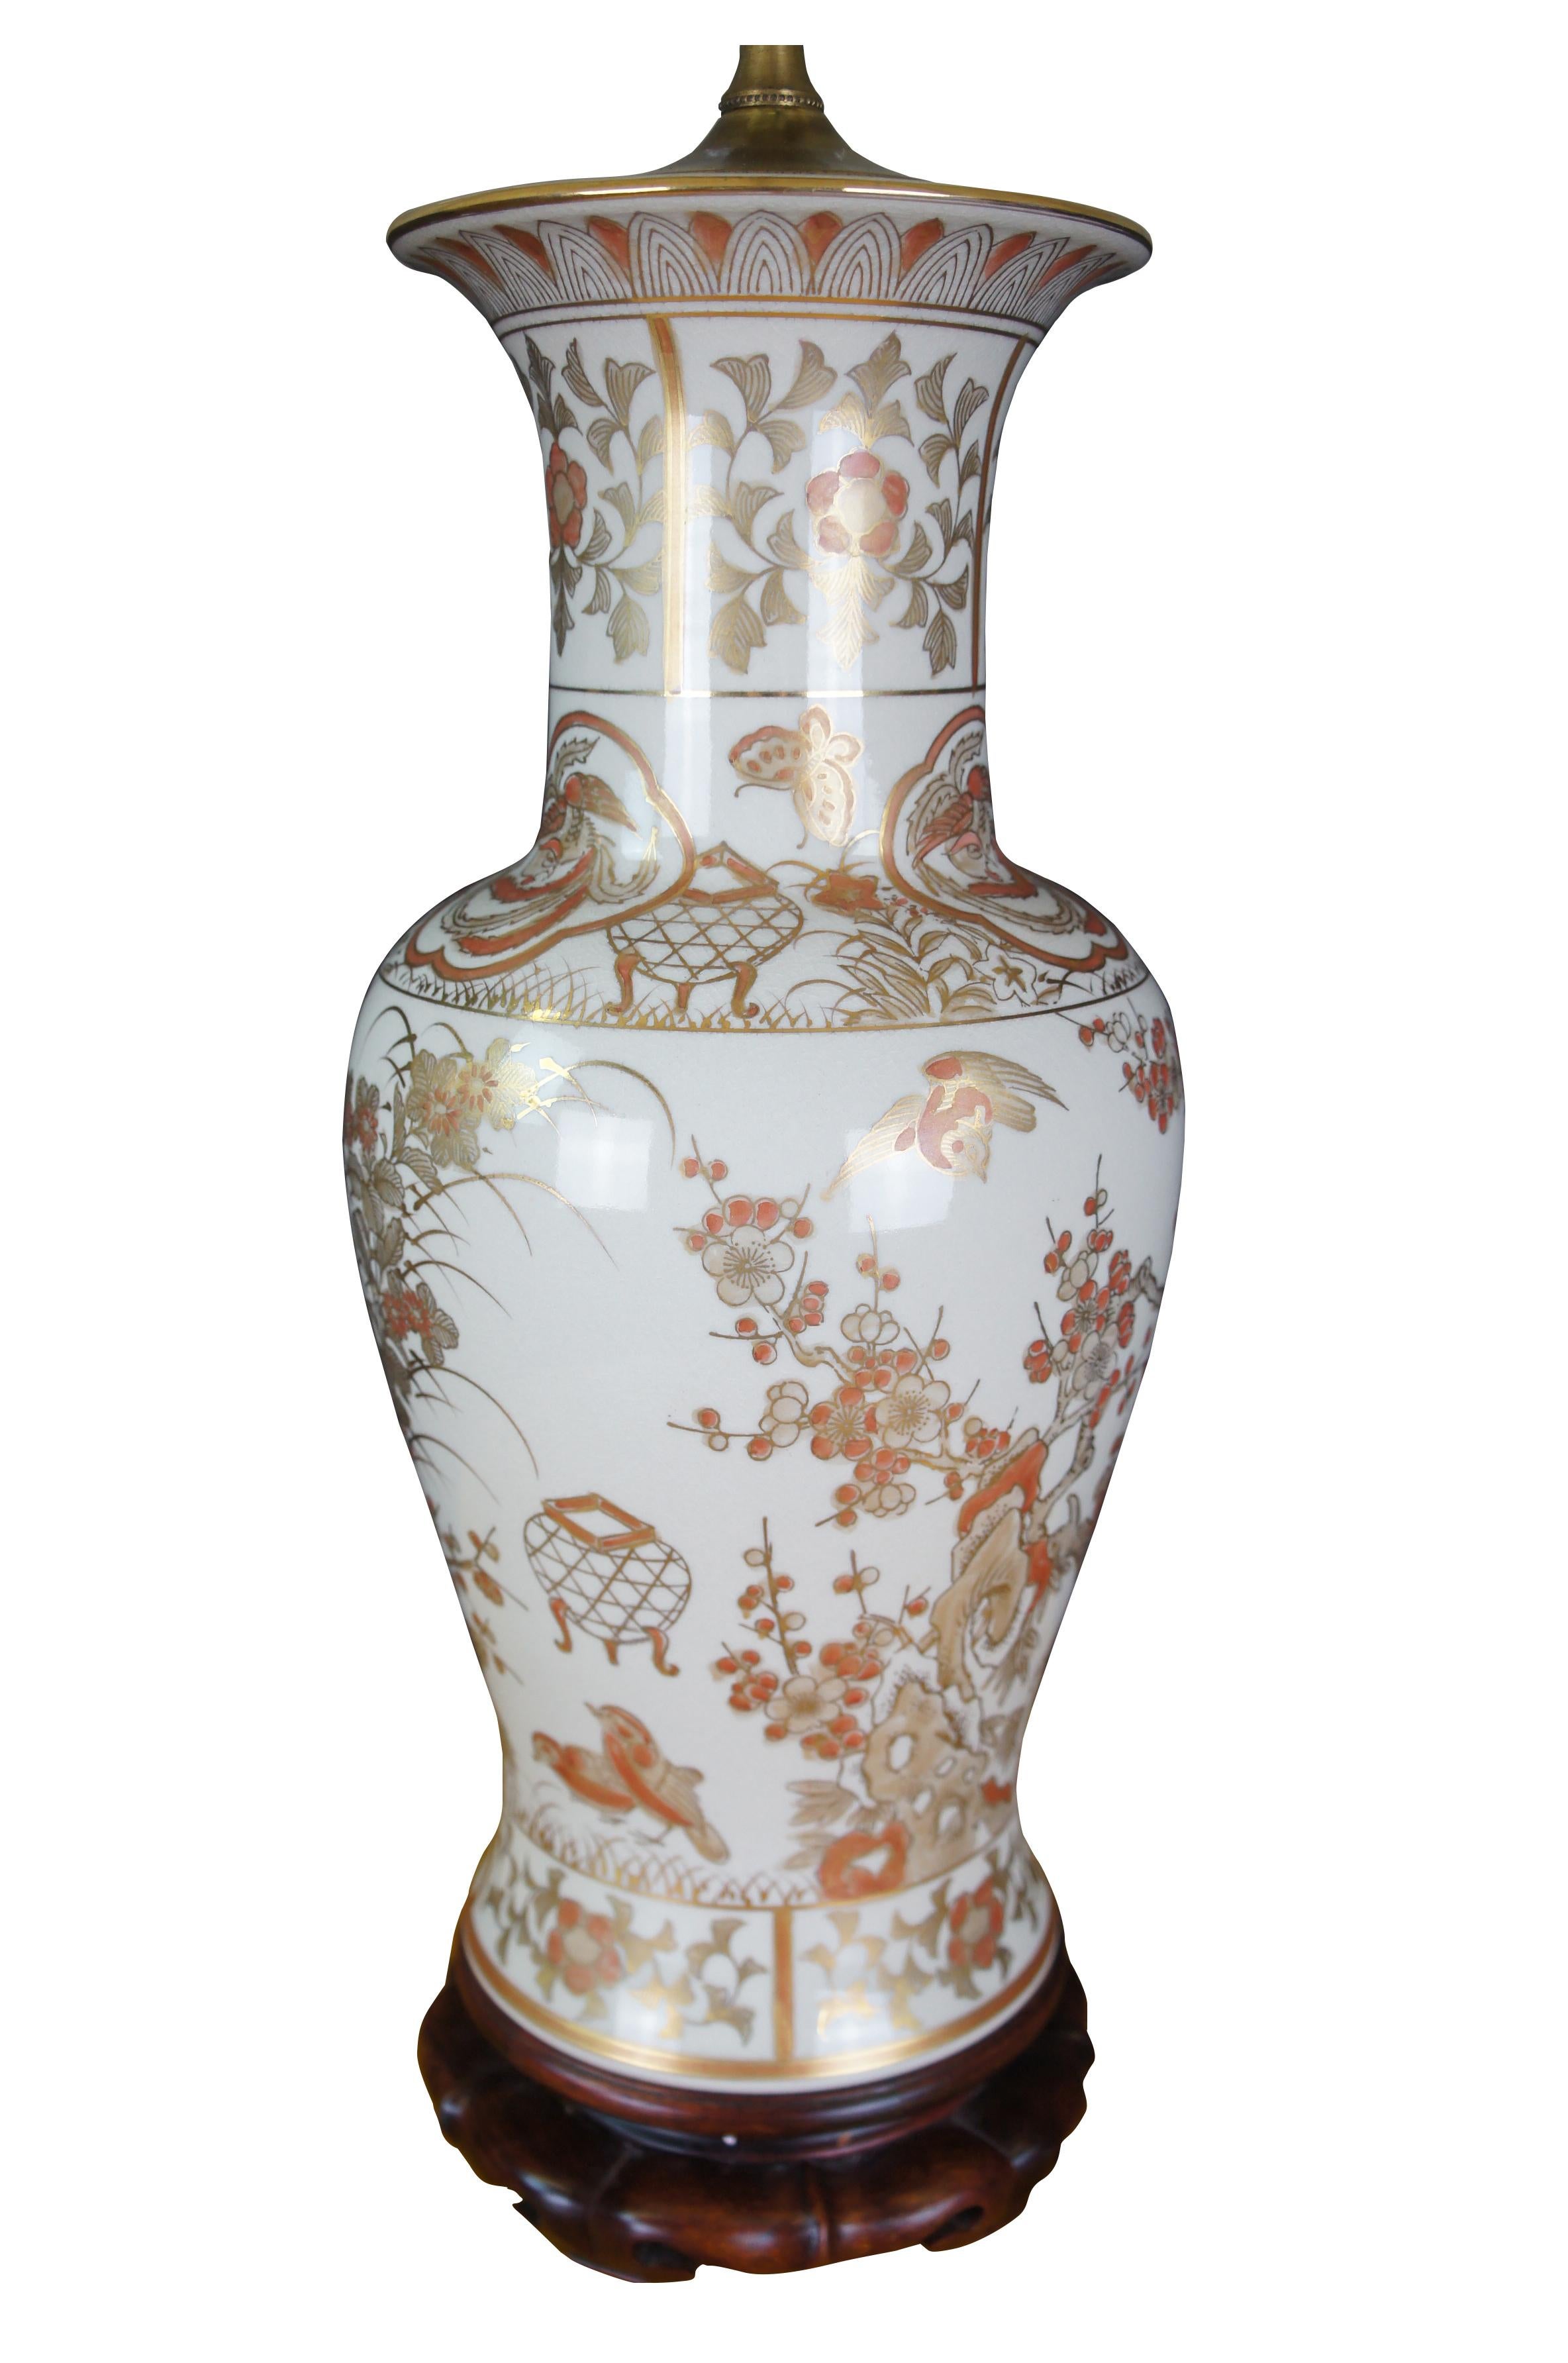 Lampe de table en porcelaine chinoise en forme d'urne. Blanc avec des couleurs or et orange.  Elle comporte des fleurs de cerisier et des oiseaux.  La lampe est montée sur un socle en bois.  Comprend un épi de faîtage en jade et un nouvel abat-jour.